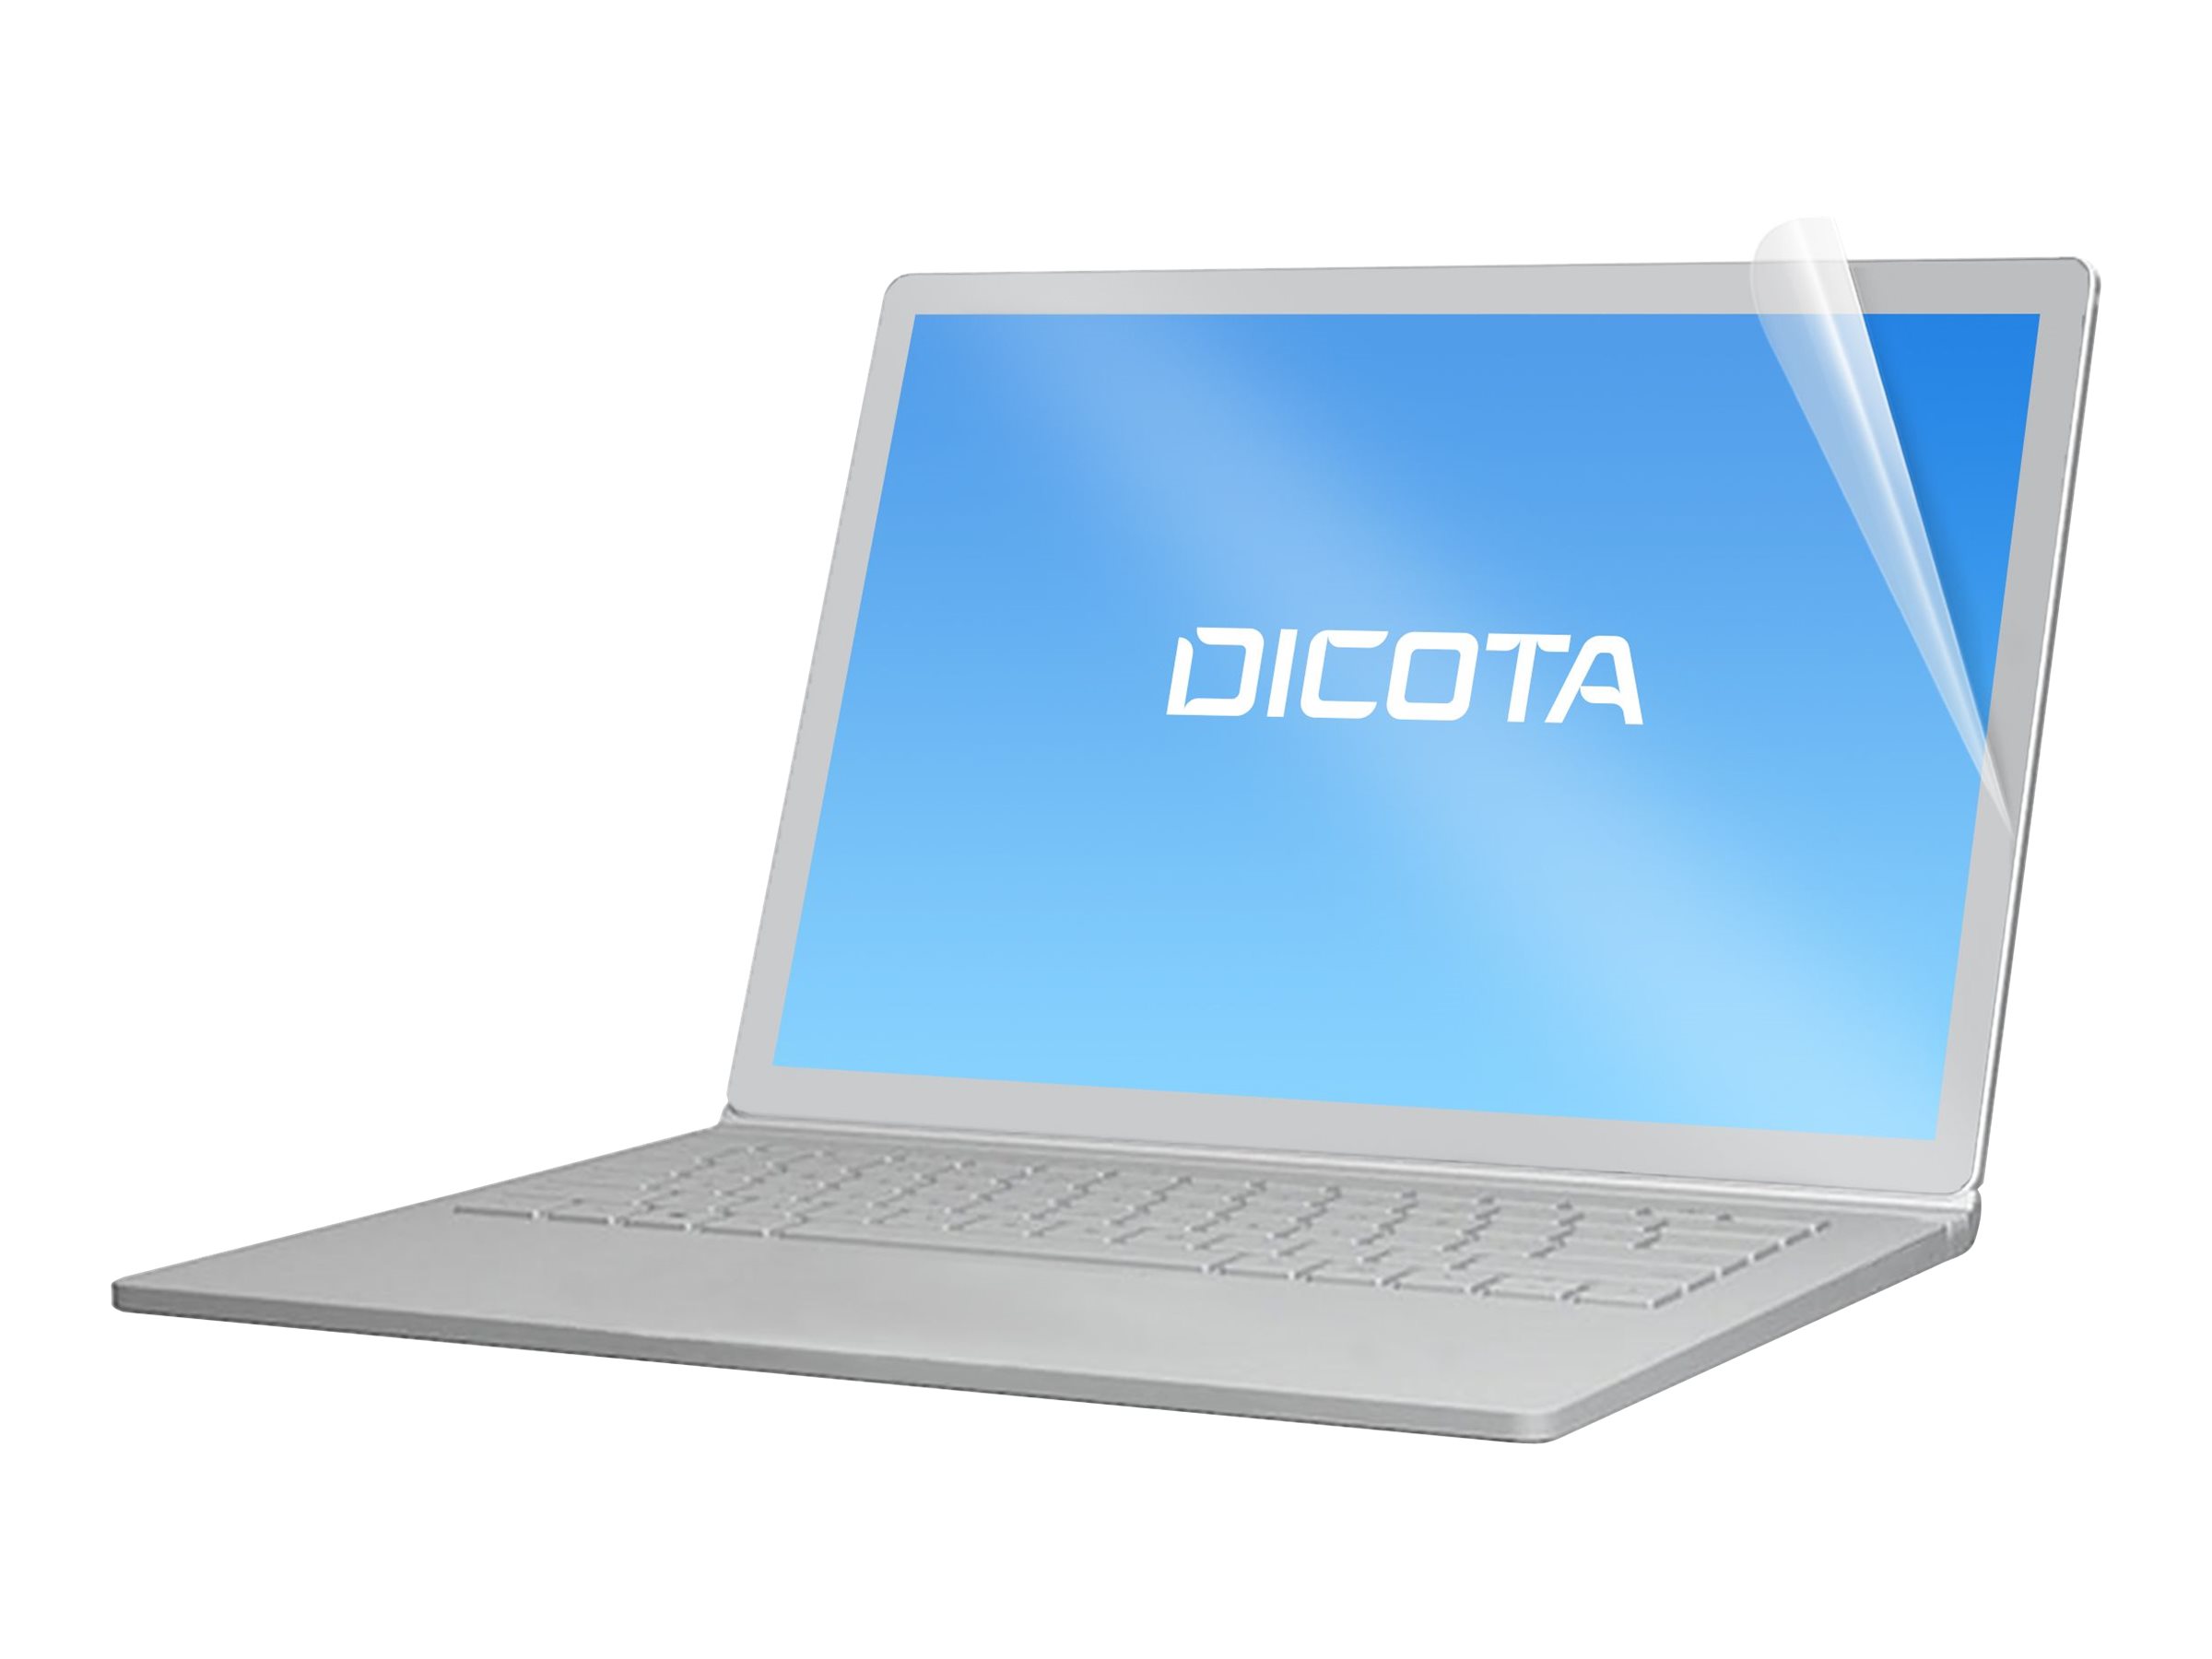 DICOTA Anti-Glare Filter 9H - Filtre anti reflet pour ordinateur portable - transparent - pour HP Elite x2 G4 - D70212 - Accessoires pour ordinateur portable et tablette